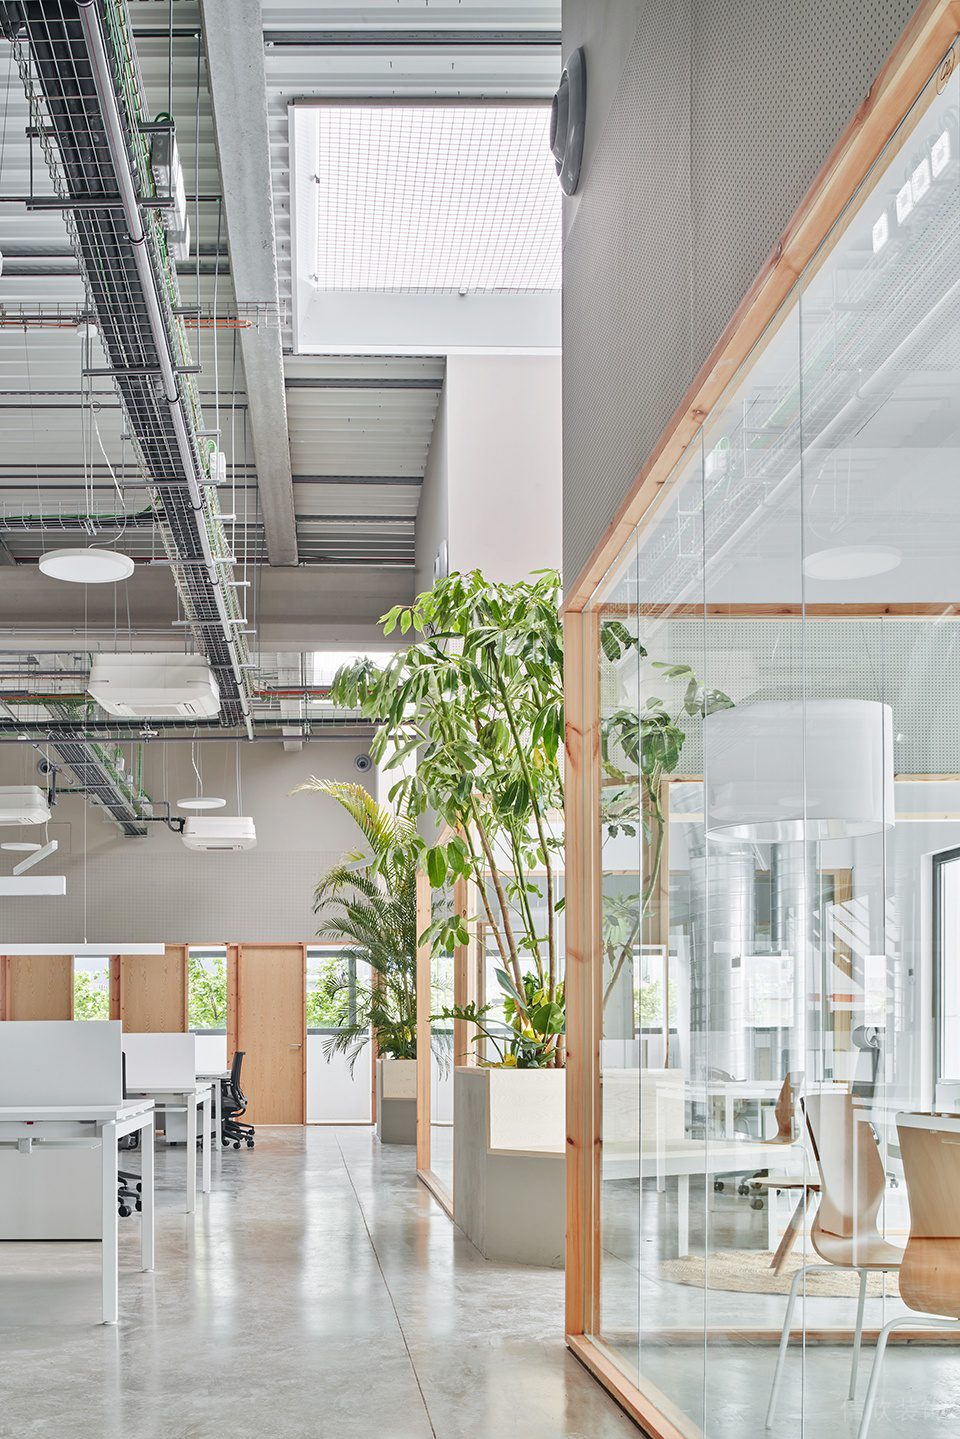 素木色简约自然风办公室装修设计浅灰色水泥自流平地面